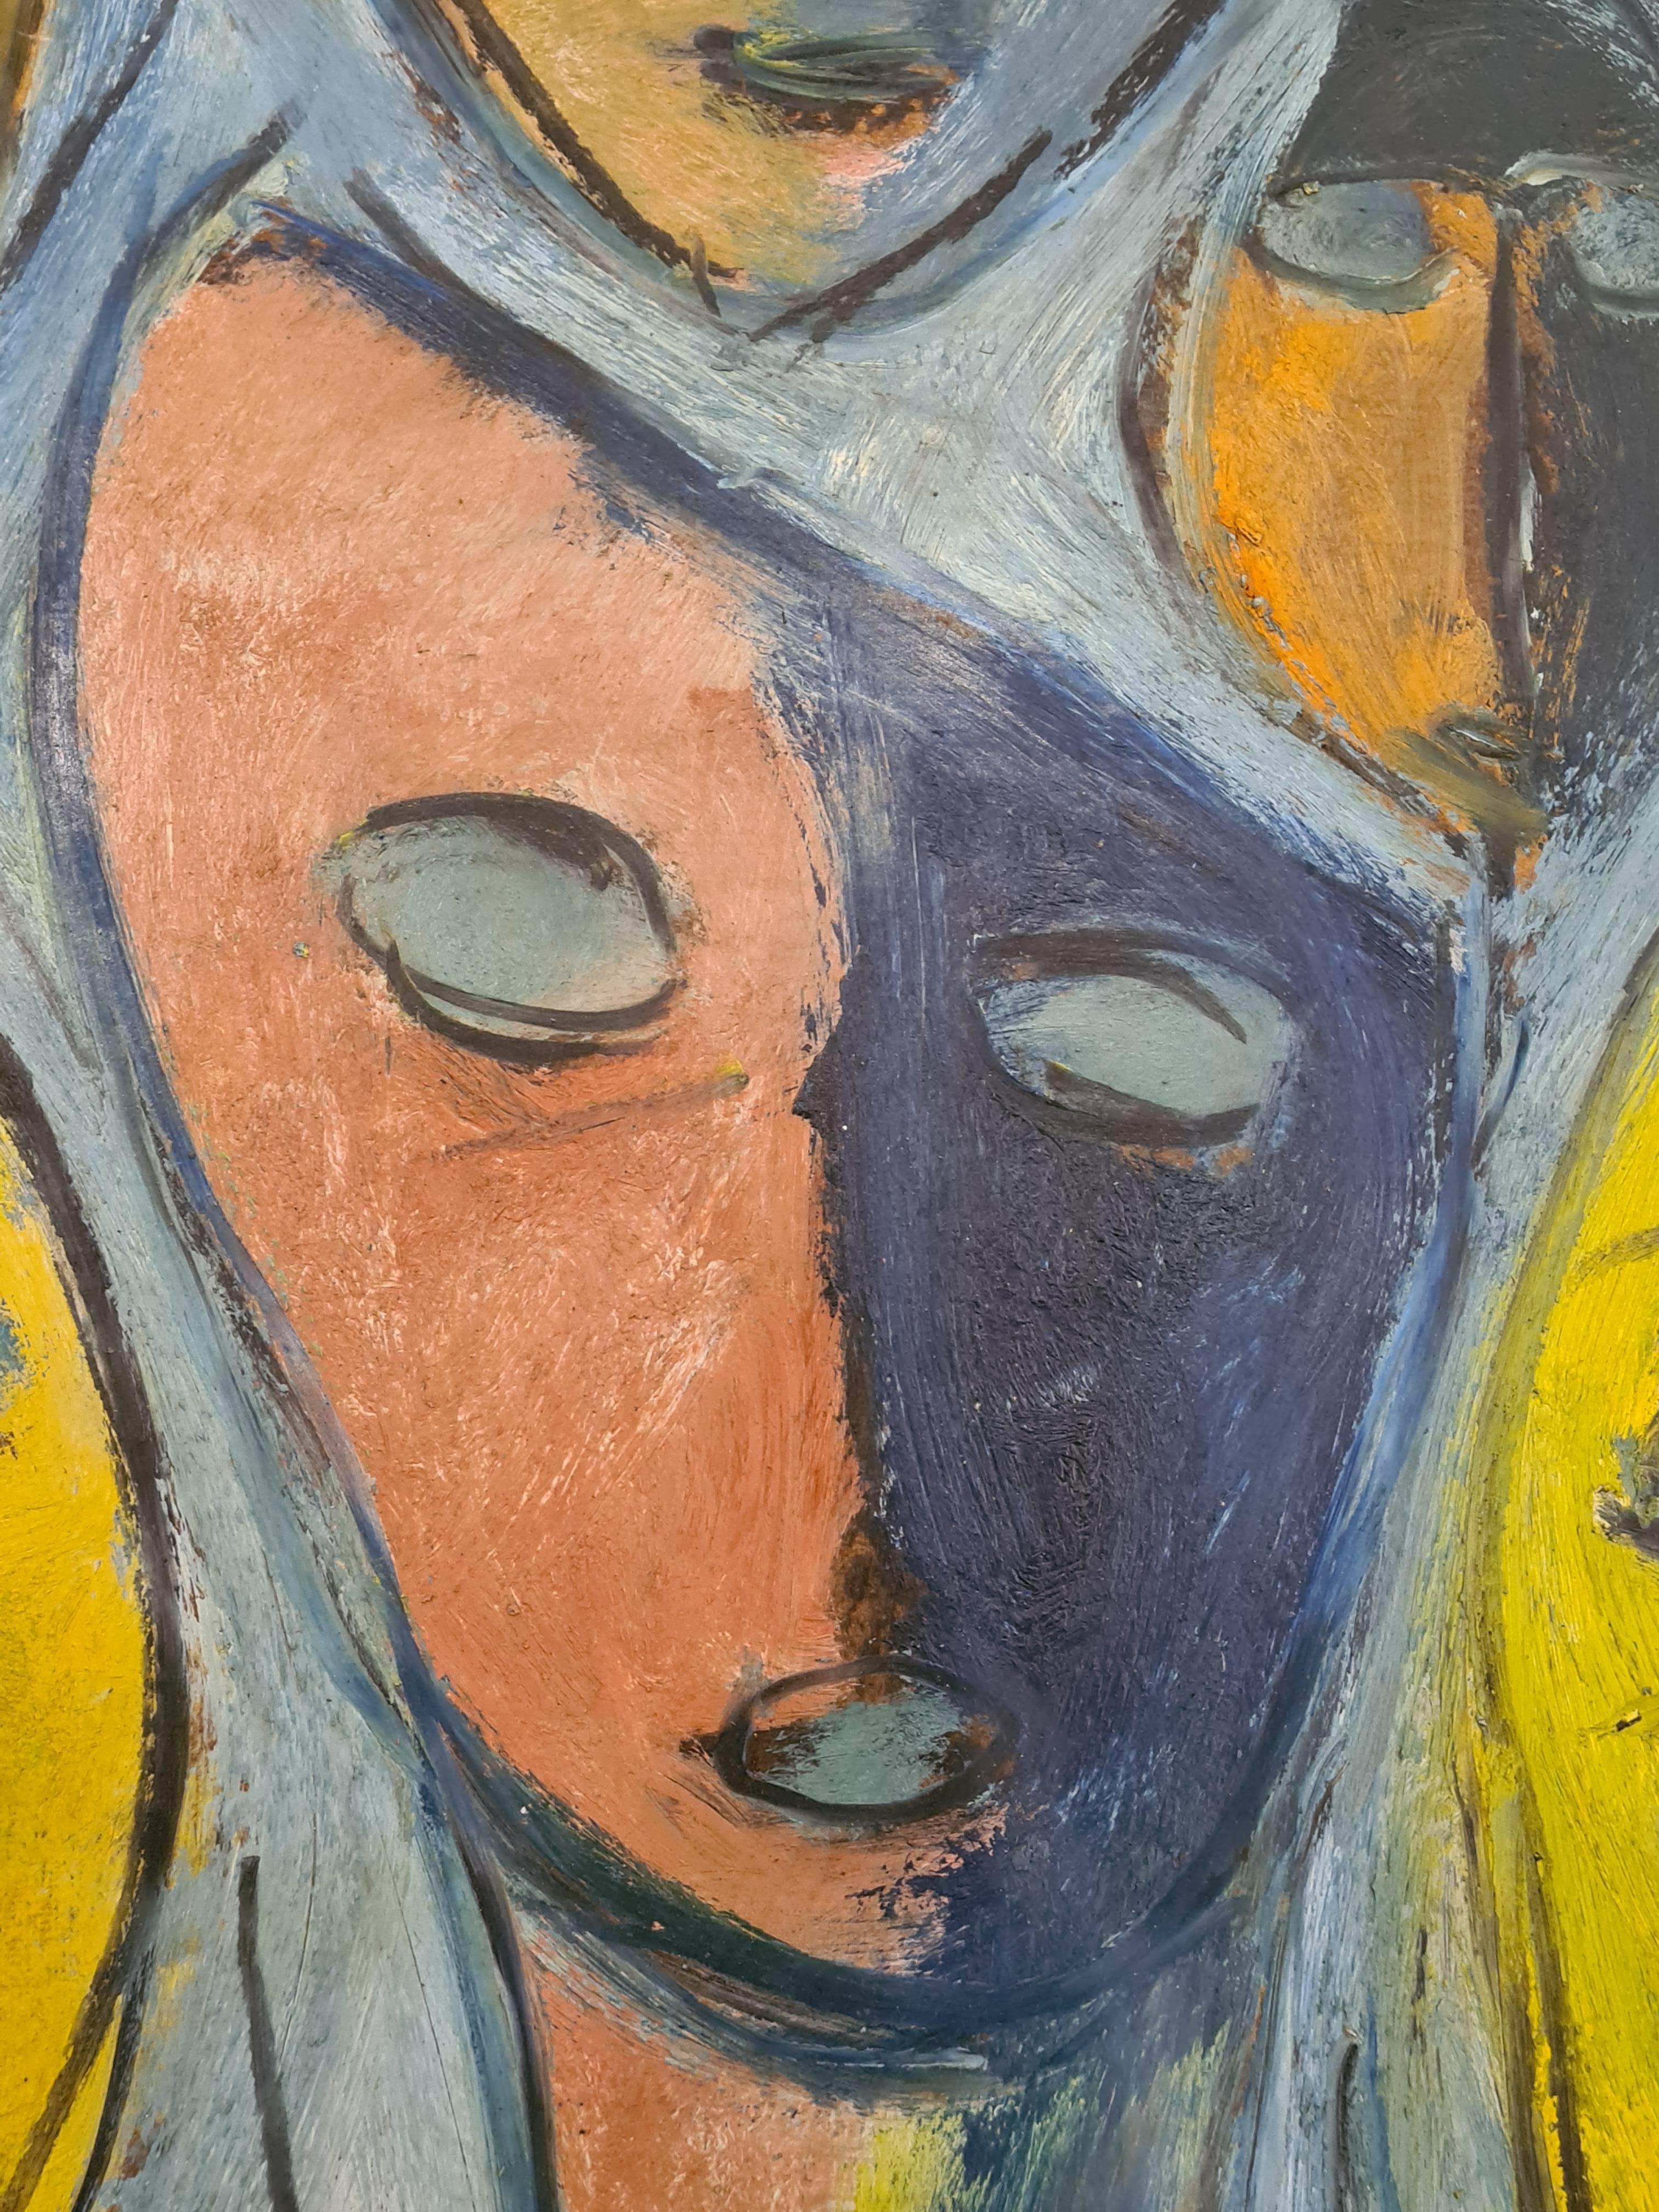 Kubistische Interpretation der Baule-Masken, Masques Africains Cubistes. (Kubismus), Painting, von Charles LeBris